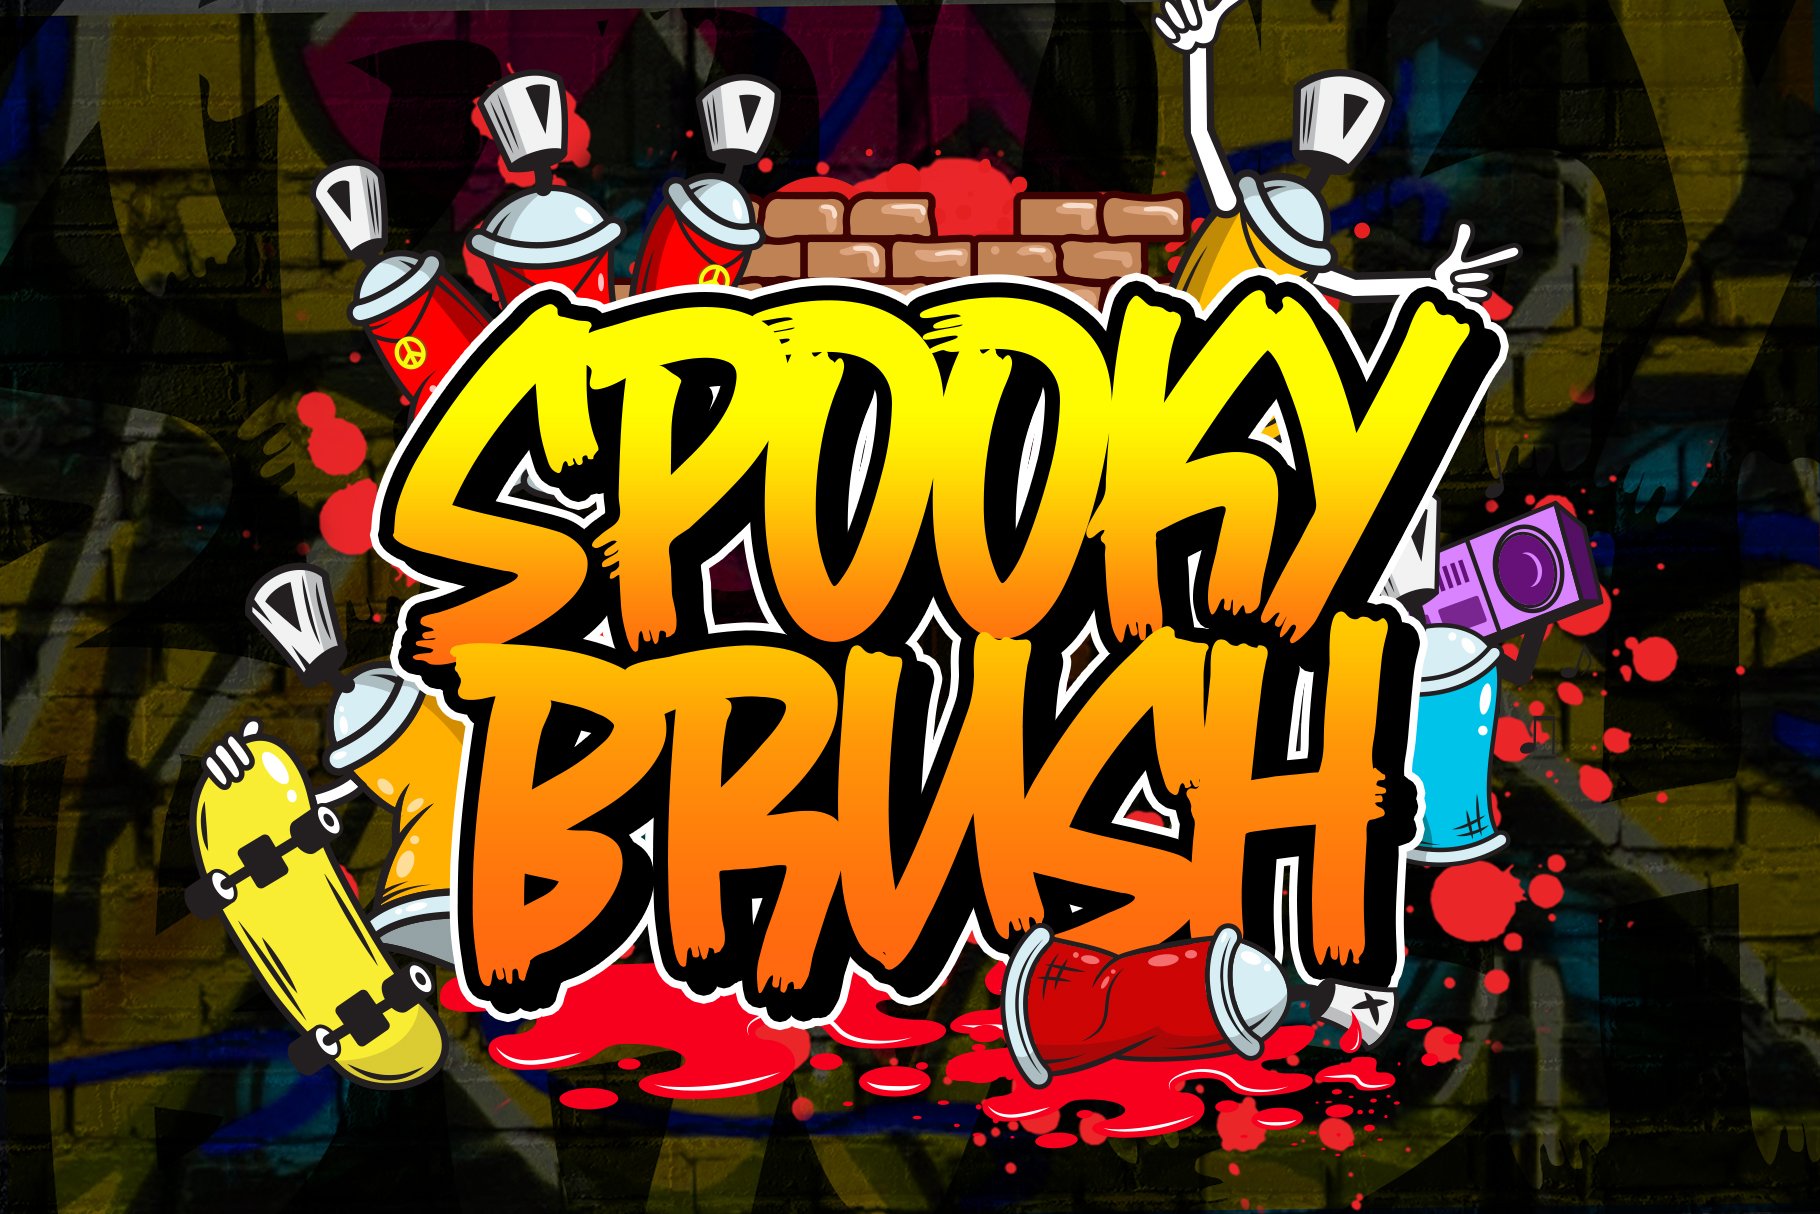 Spooky Brush | Graffiti Brush Font cover image.